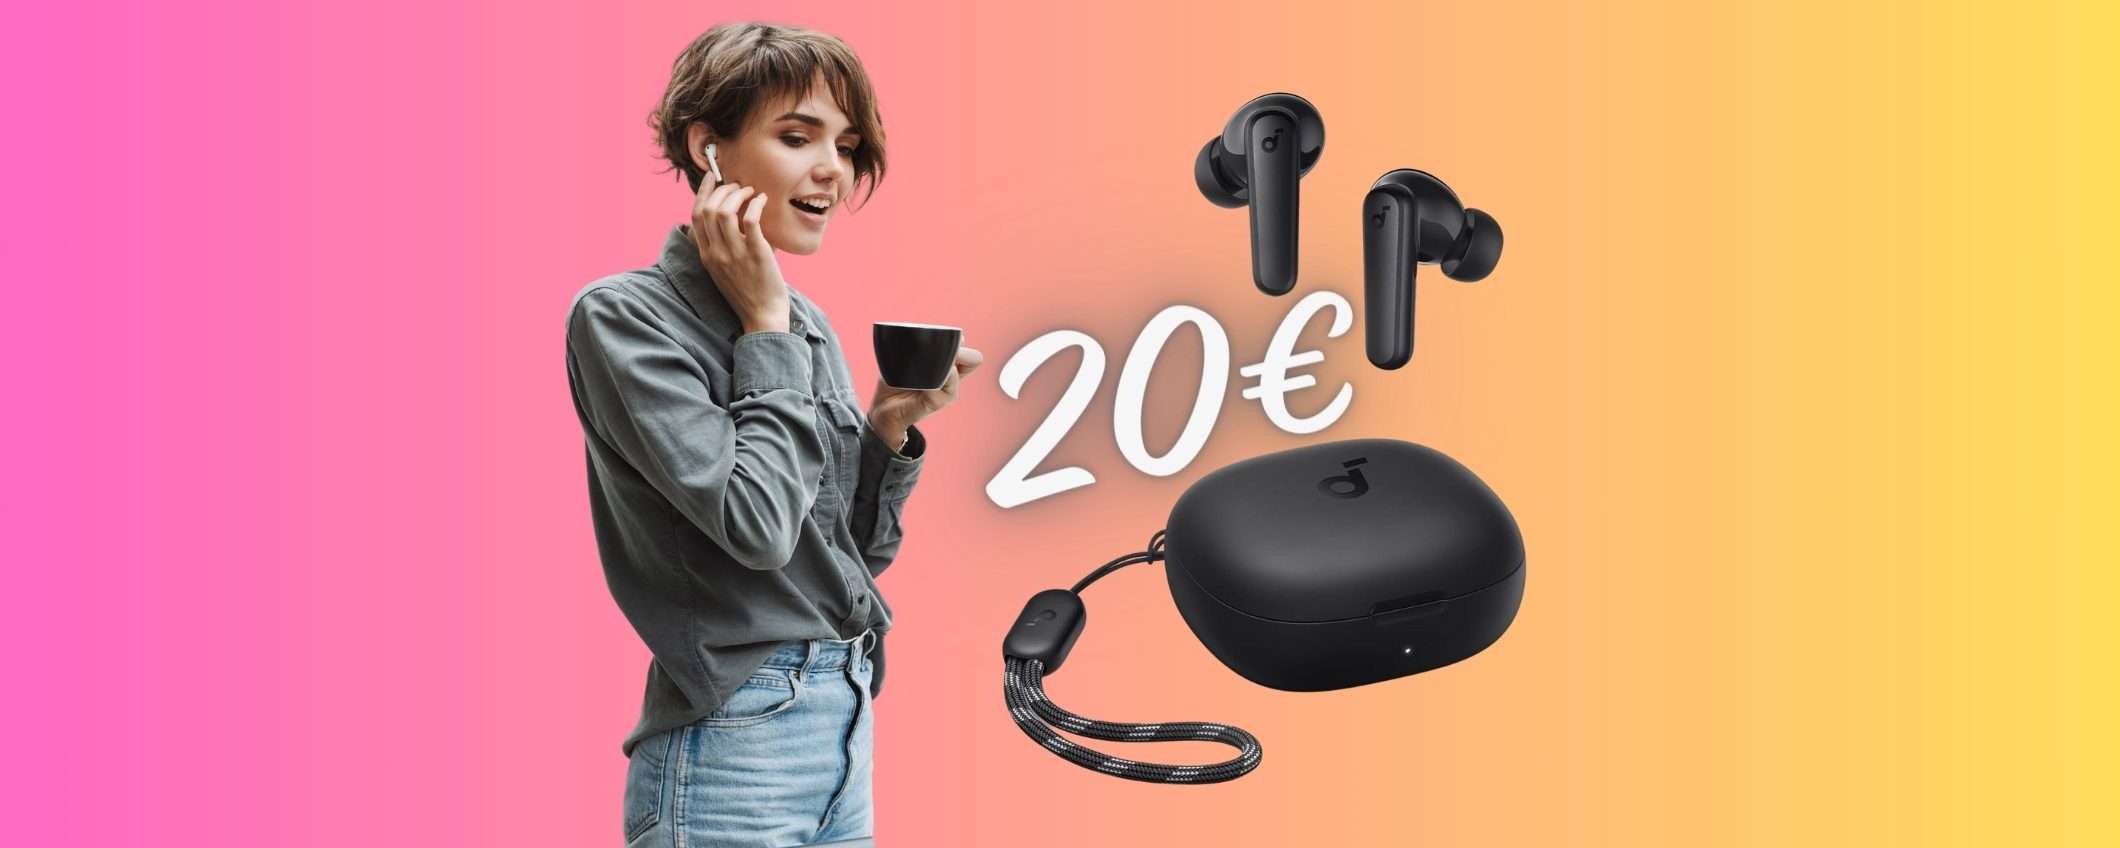 Auricolari wireless Soundcore a PREZZO SCIOLTO su Amazon, solo 20€